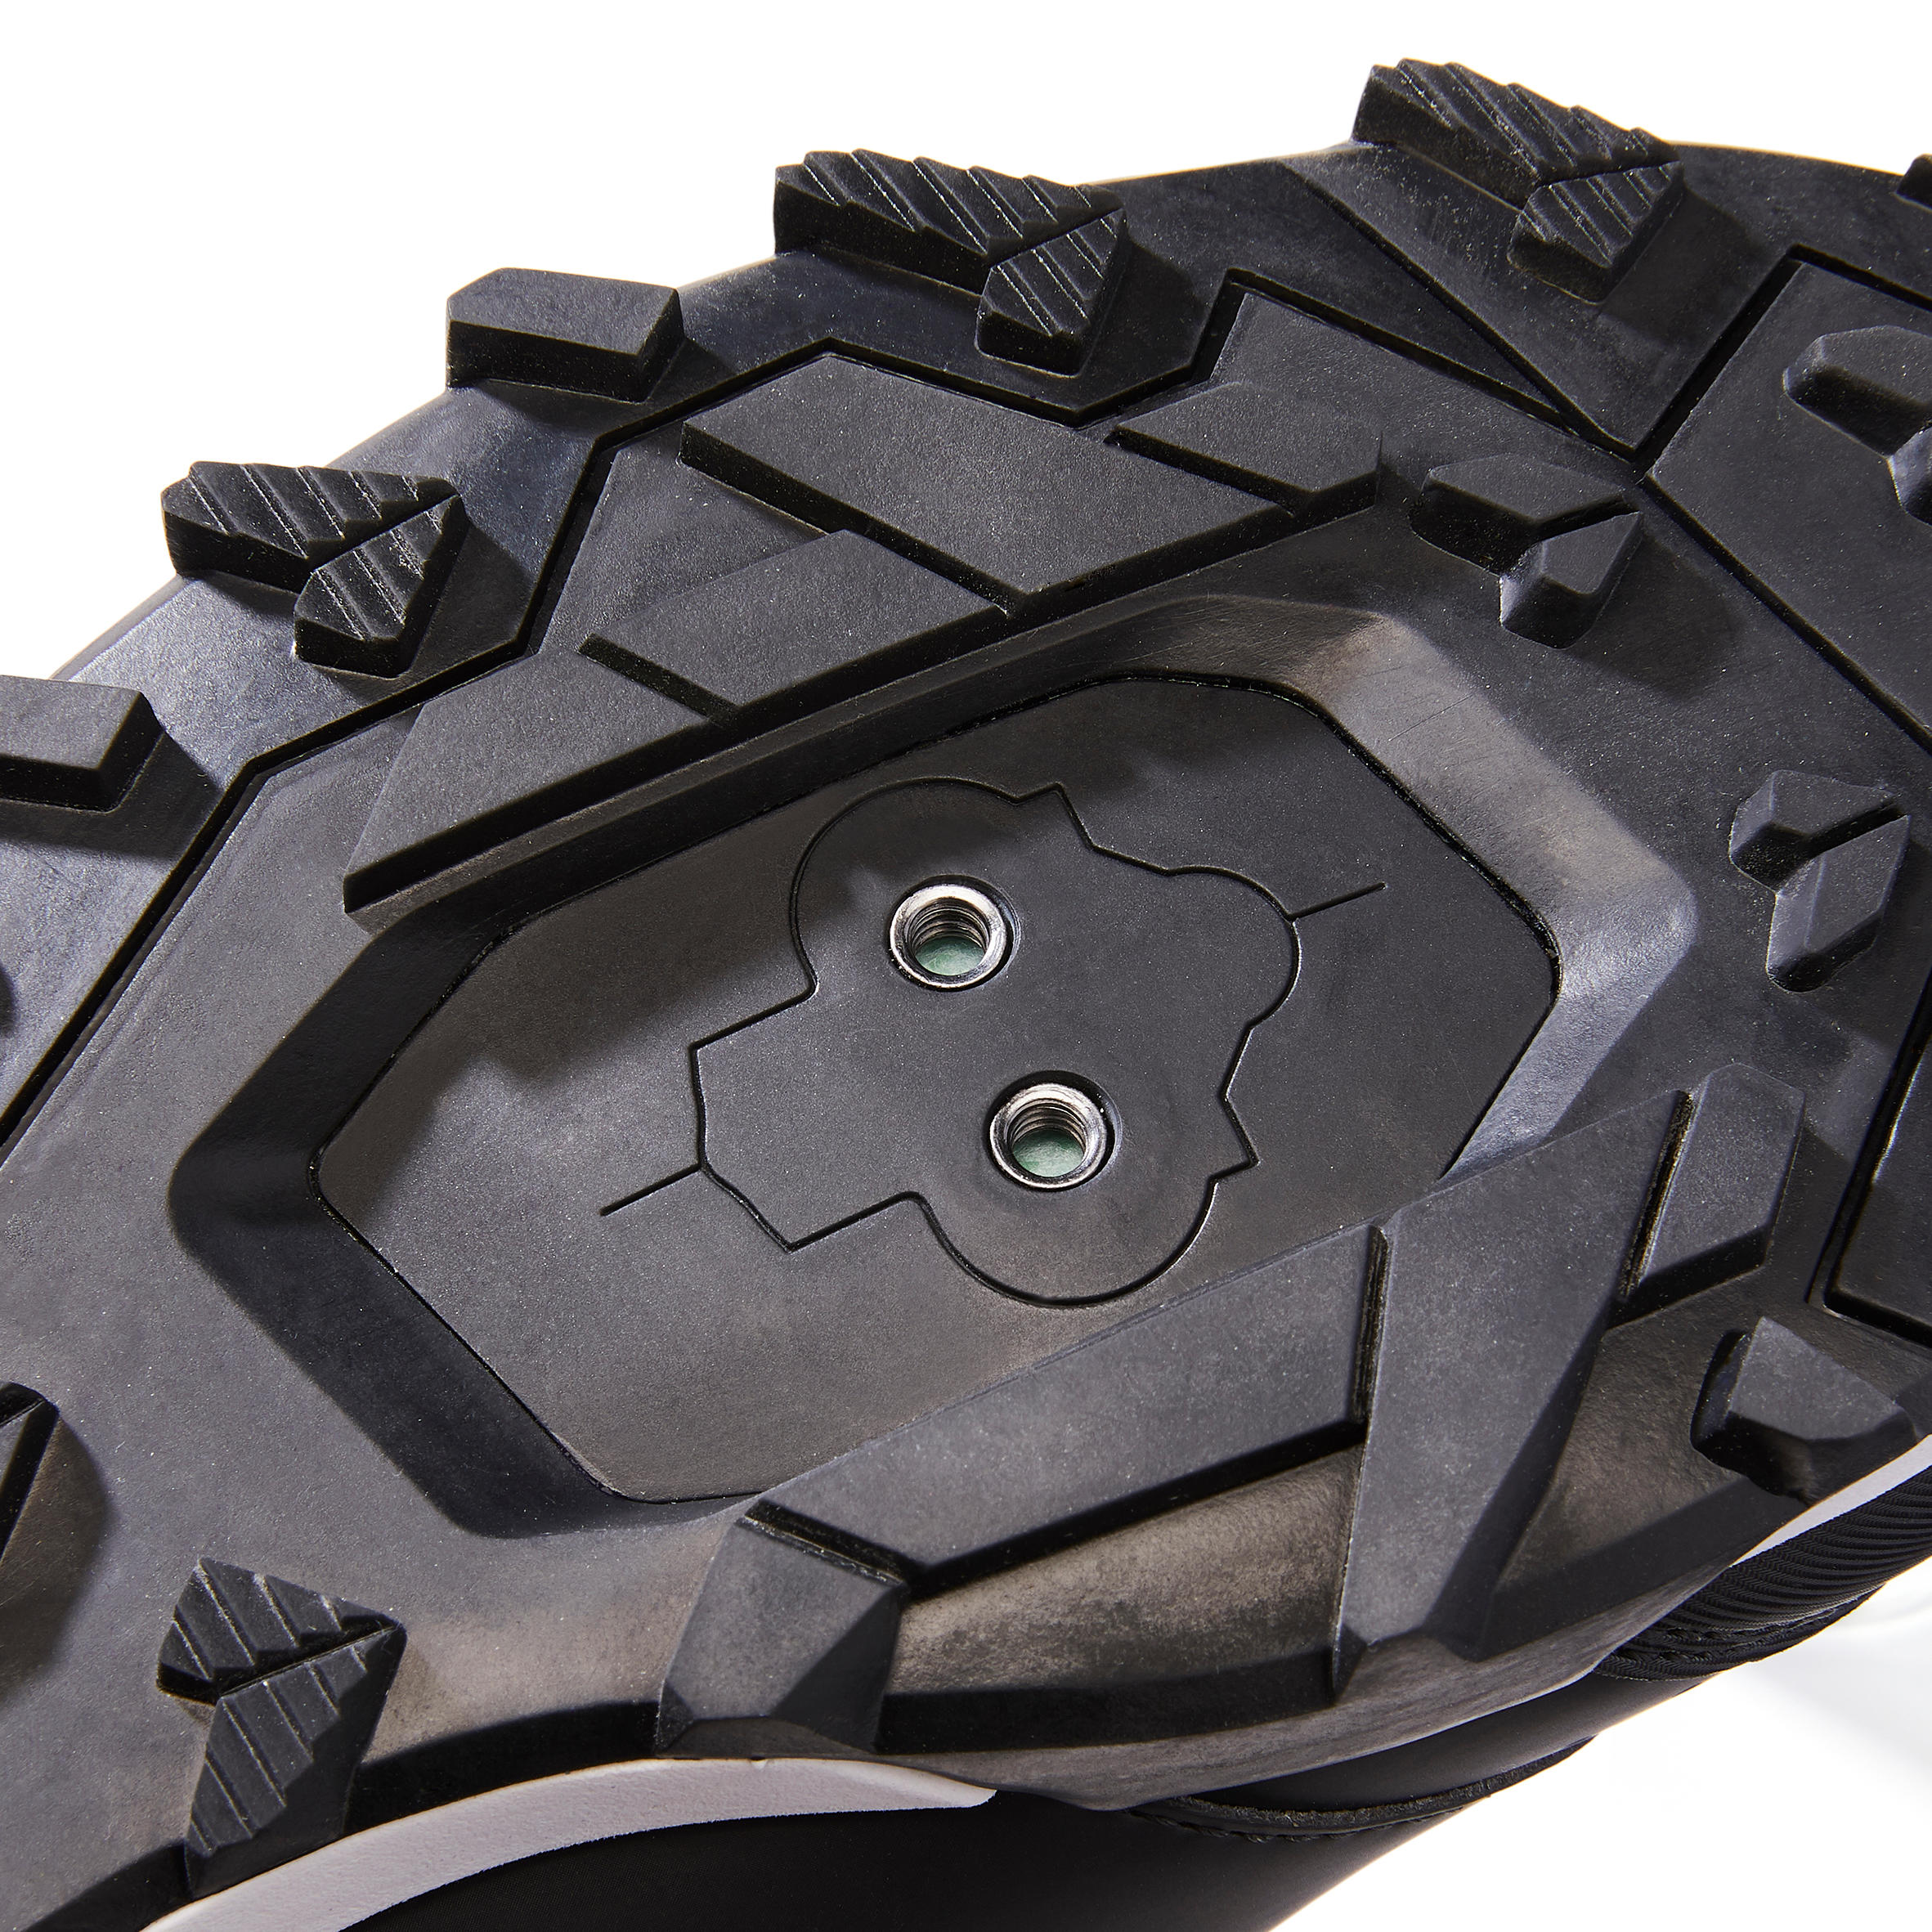 Hybrid Mountain Biking Shoes - Black 9/10